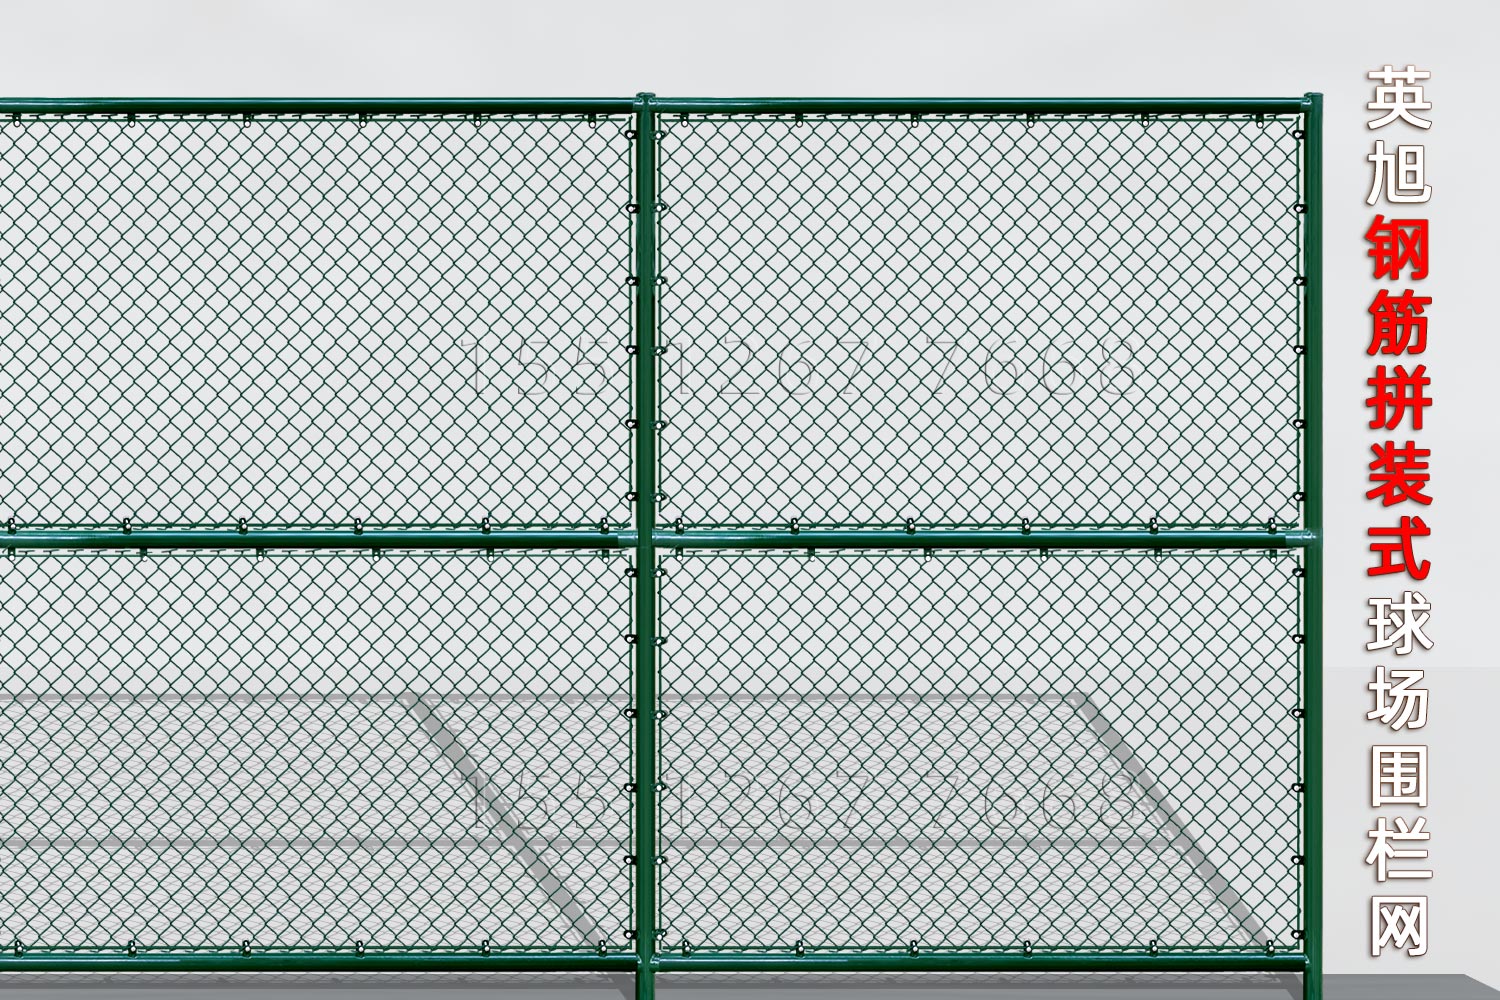 青海钢筋组装式球场围栏网